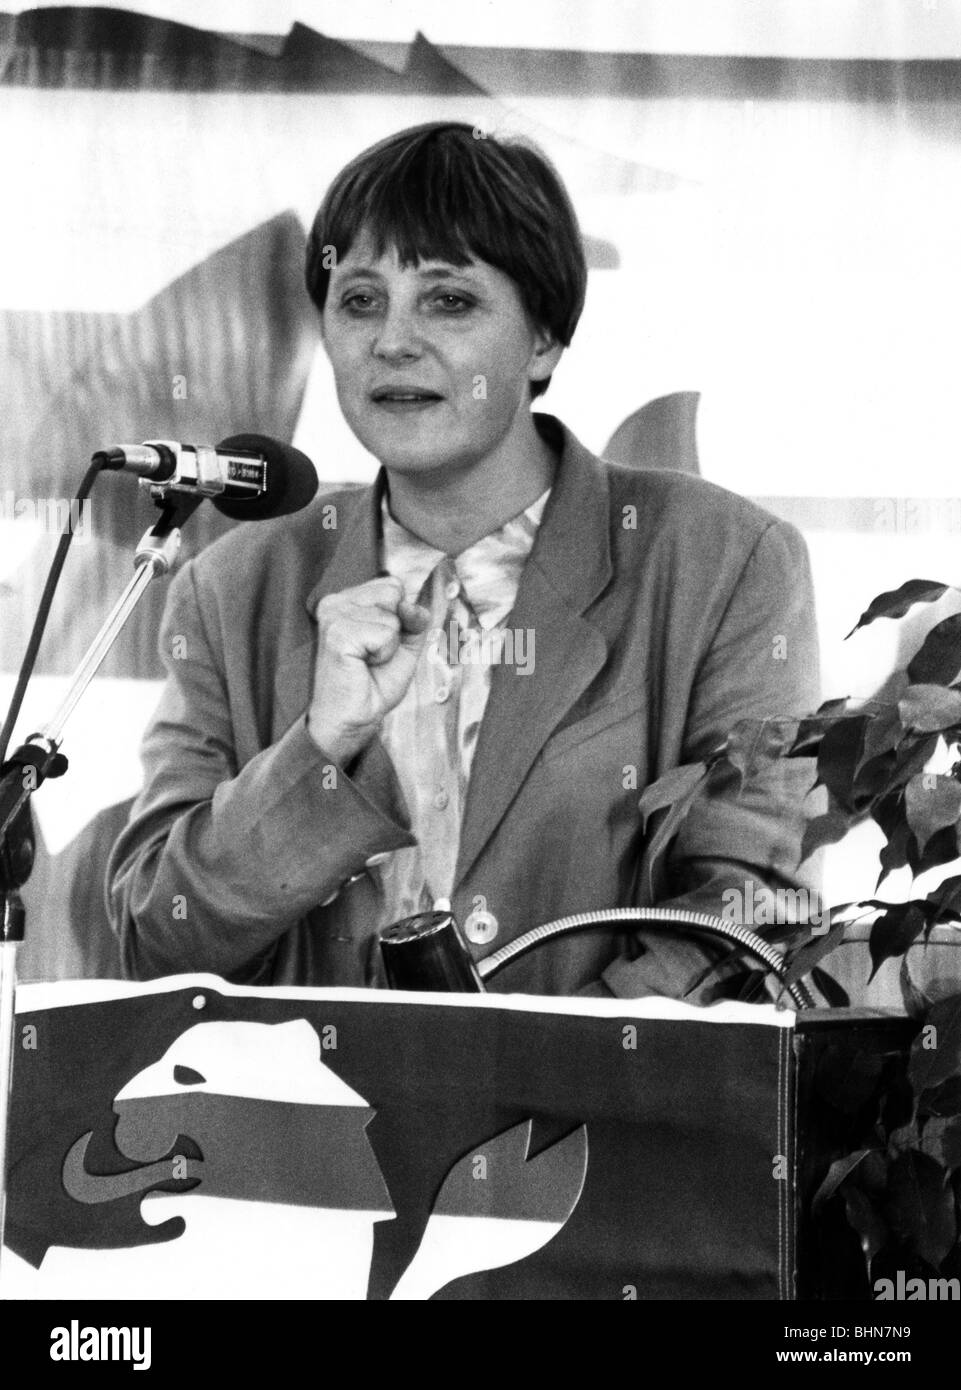 Merkel, Angela Dorothea, Dr., * 17.7.1954, politicienne allemande (CDU), demi-longueur, en tant que ministre fédérale de la femme et de la jeunesse, prononcera un discours, 13.9.1994, Banque D'Images